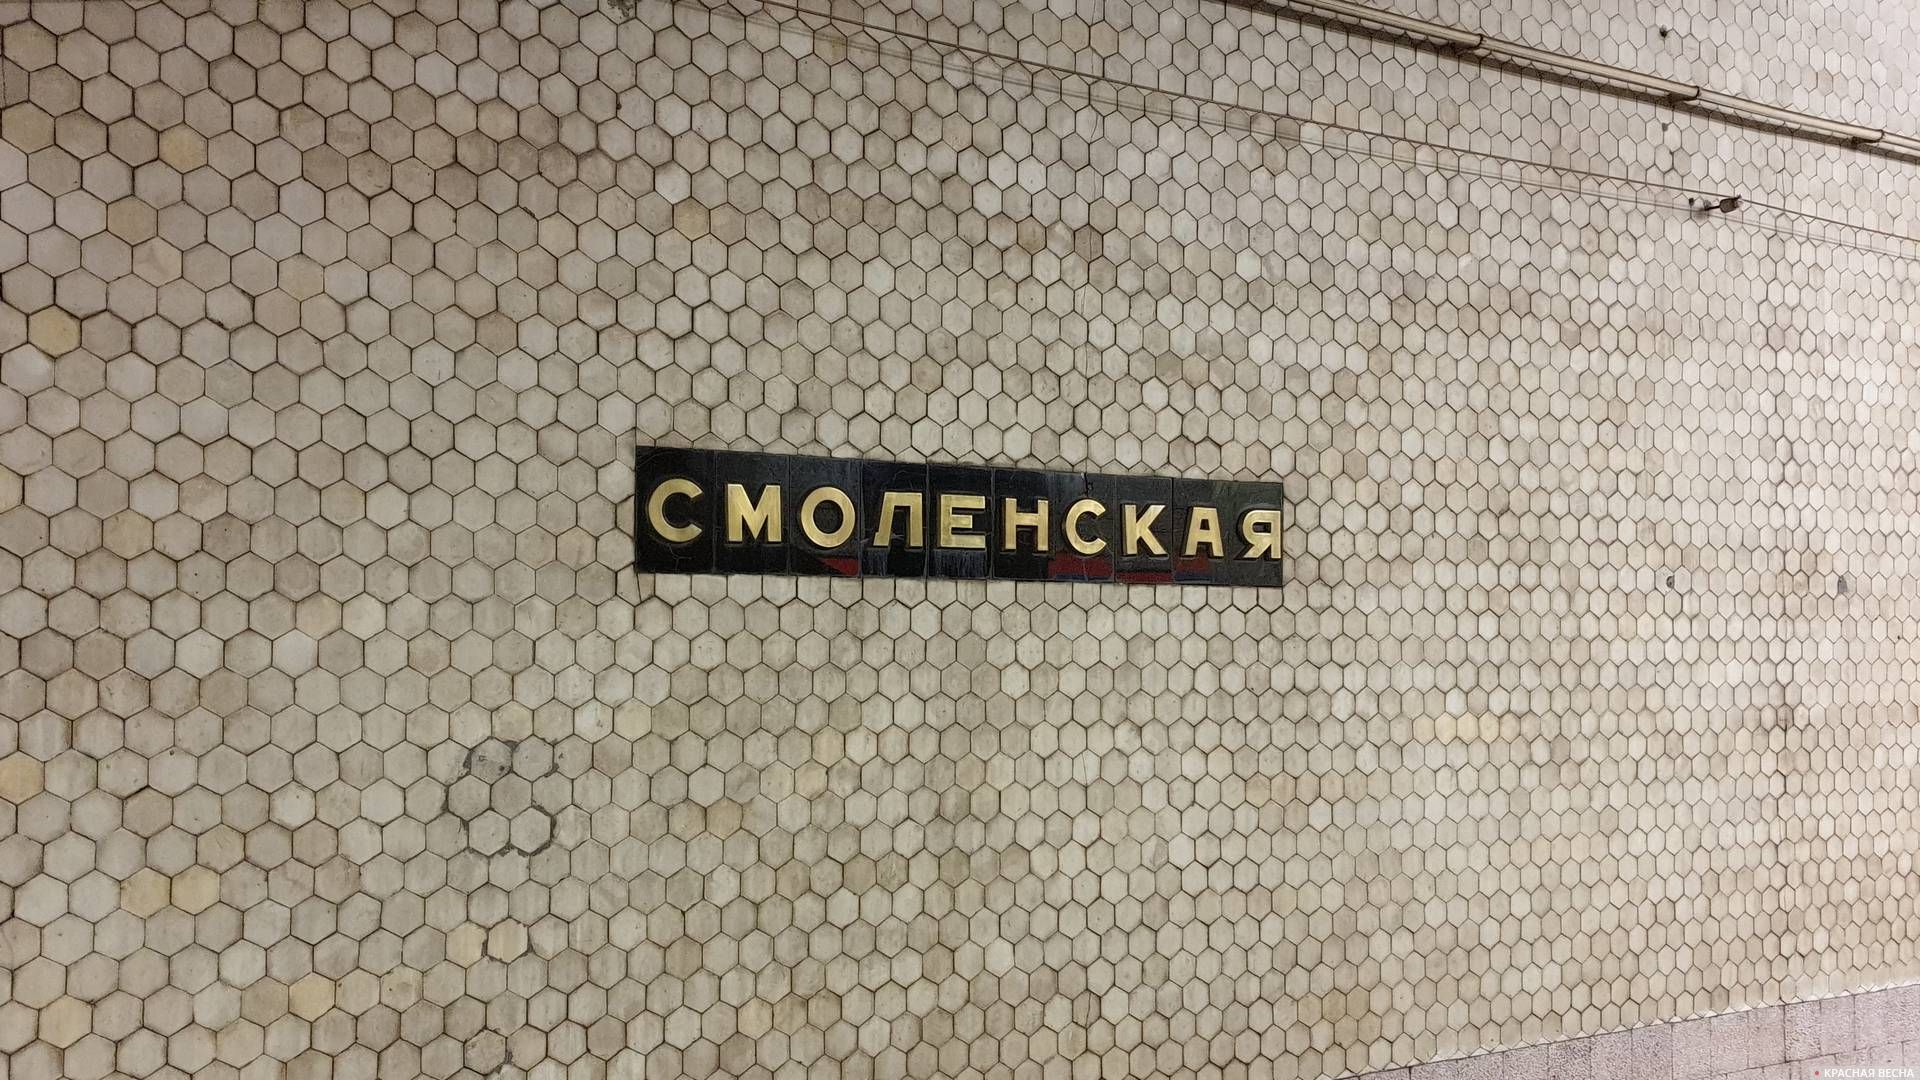 Название станции.